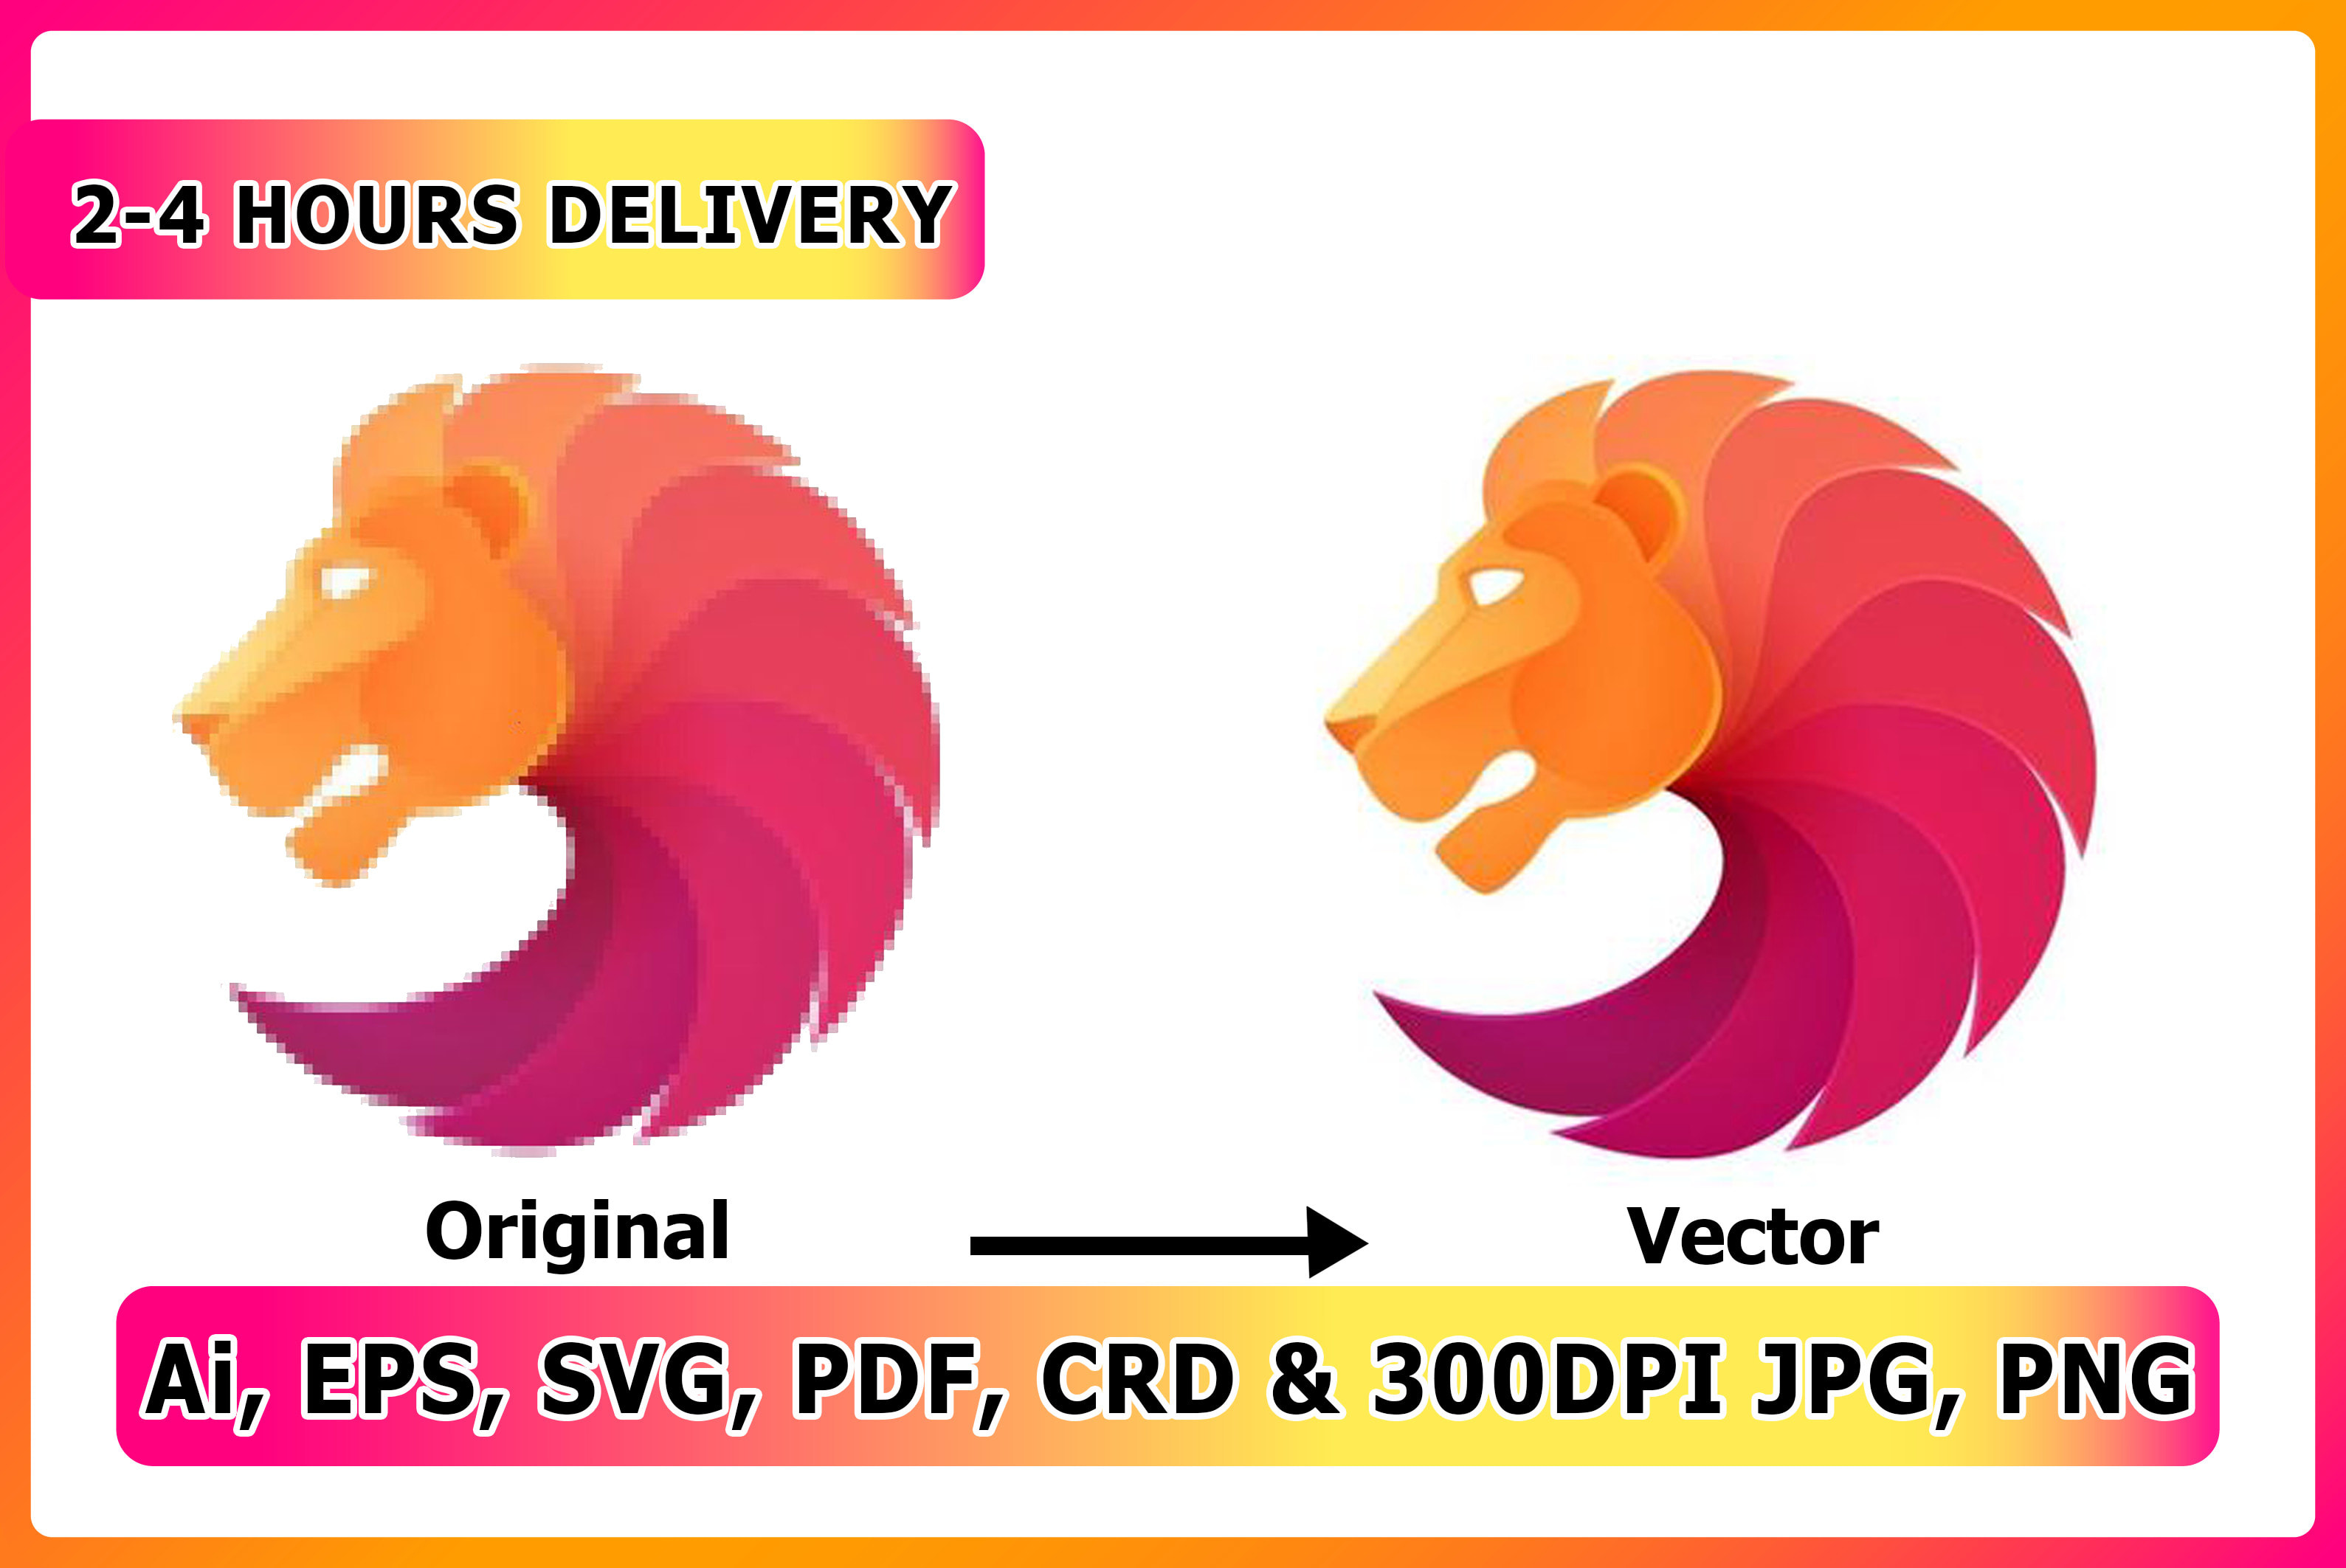 Do Vector Tracing, Vectorise Or Convert Logo To Vector